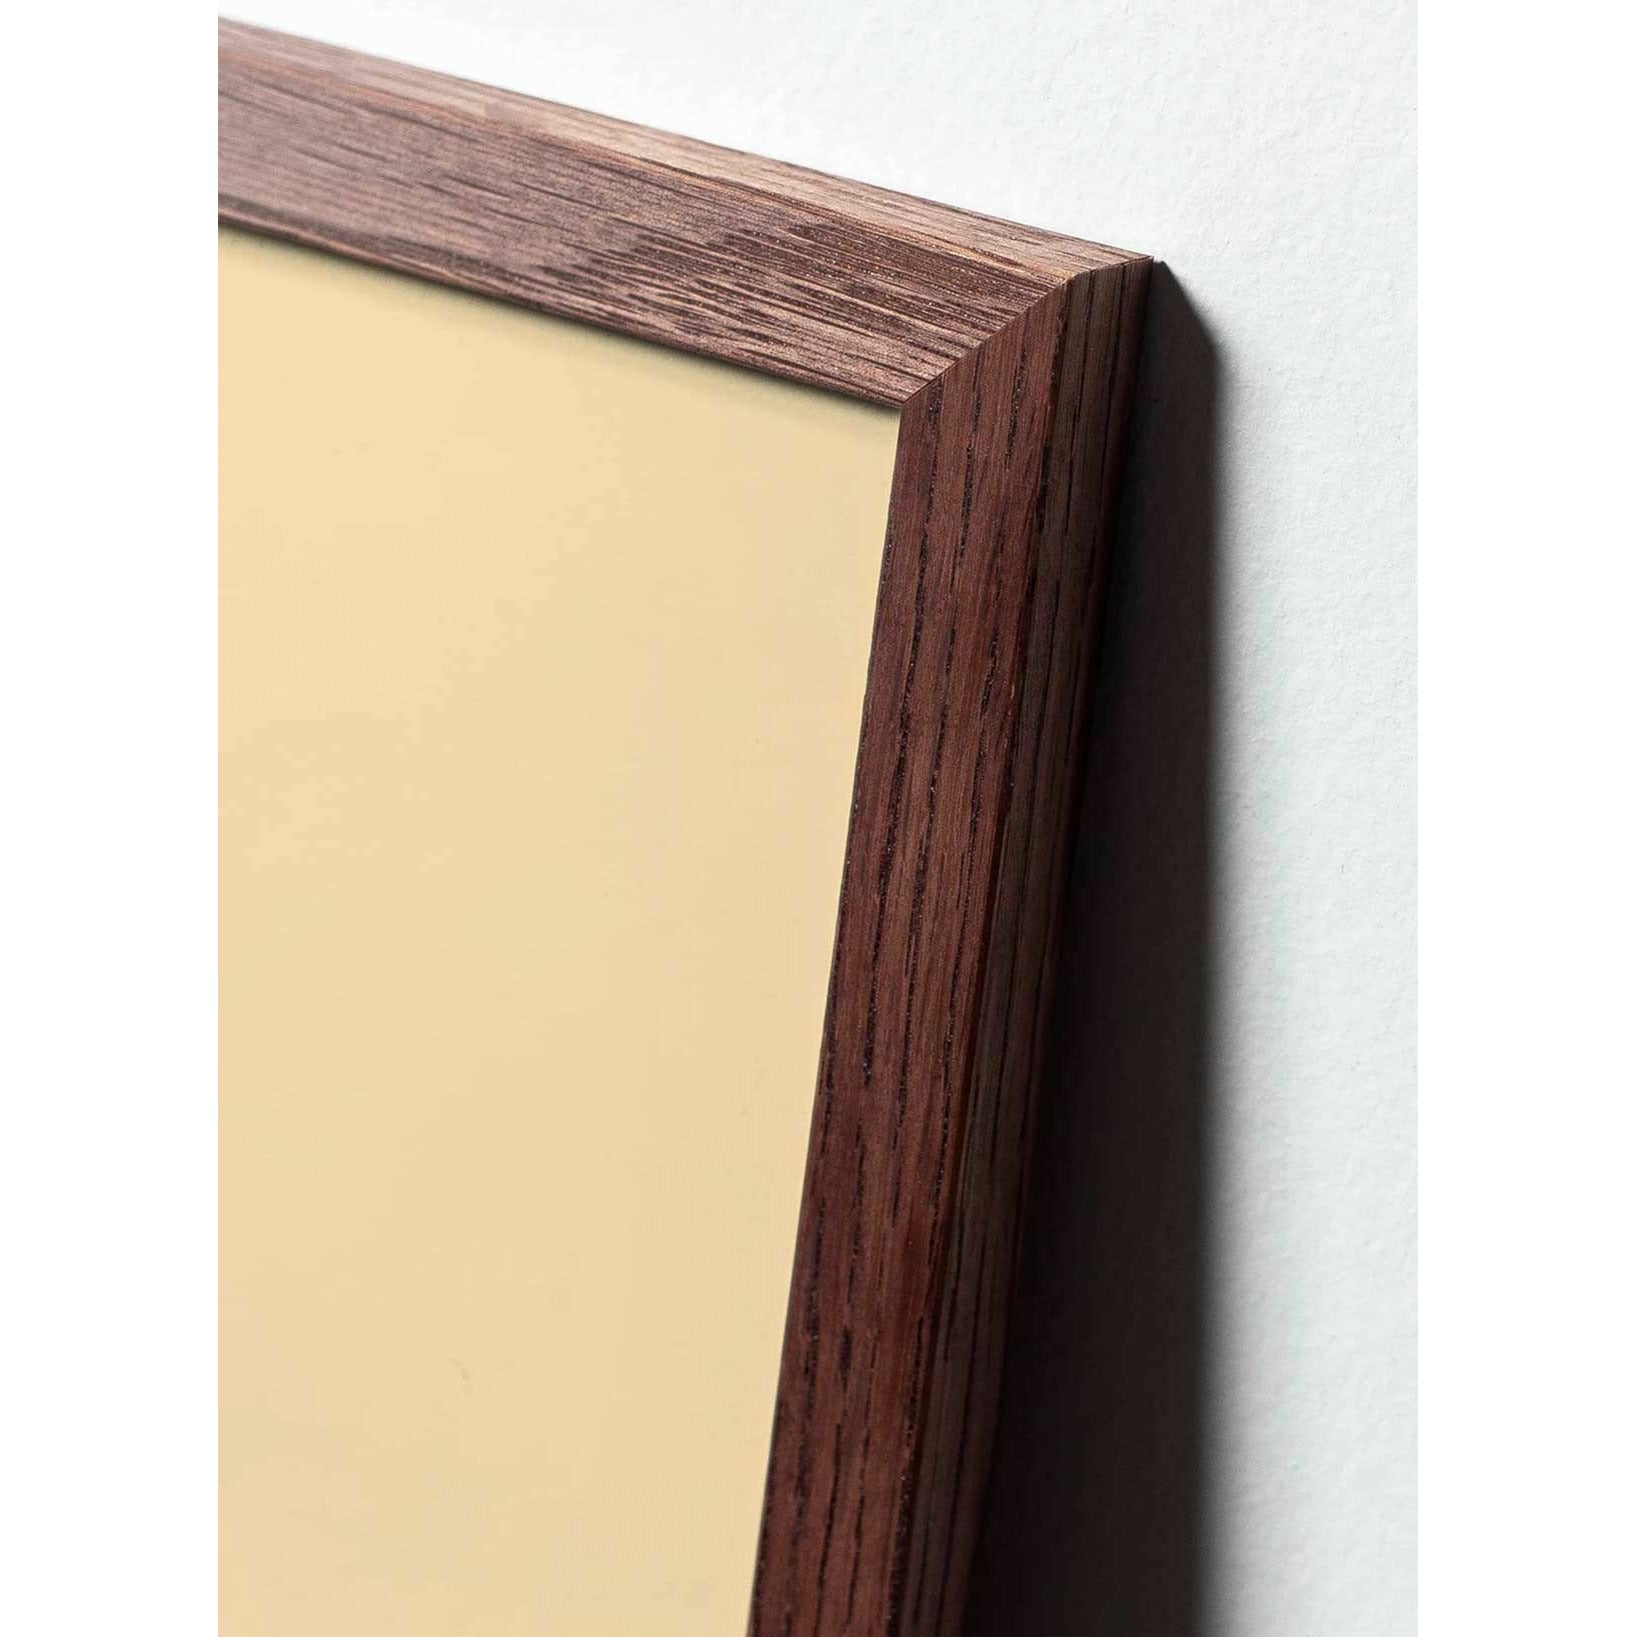 Póster clásico de BrainChild Teddy Bear, marco hecho de madera oscura de 50x70 cm, fondo blanco